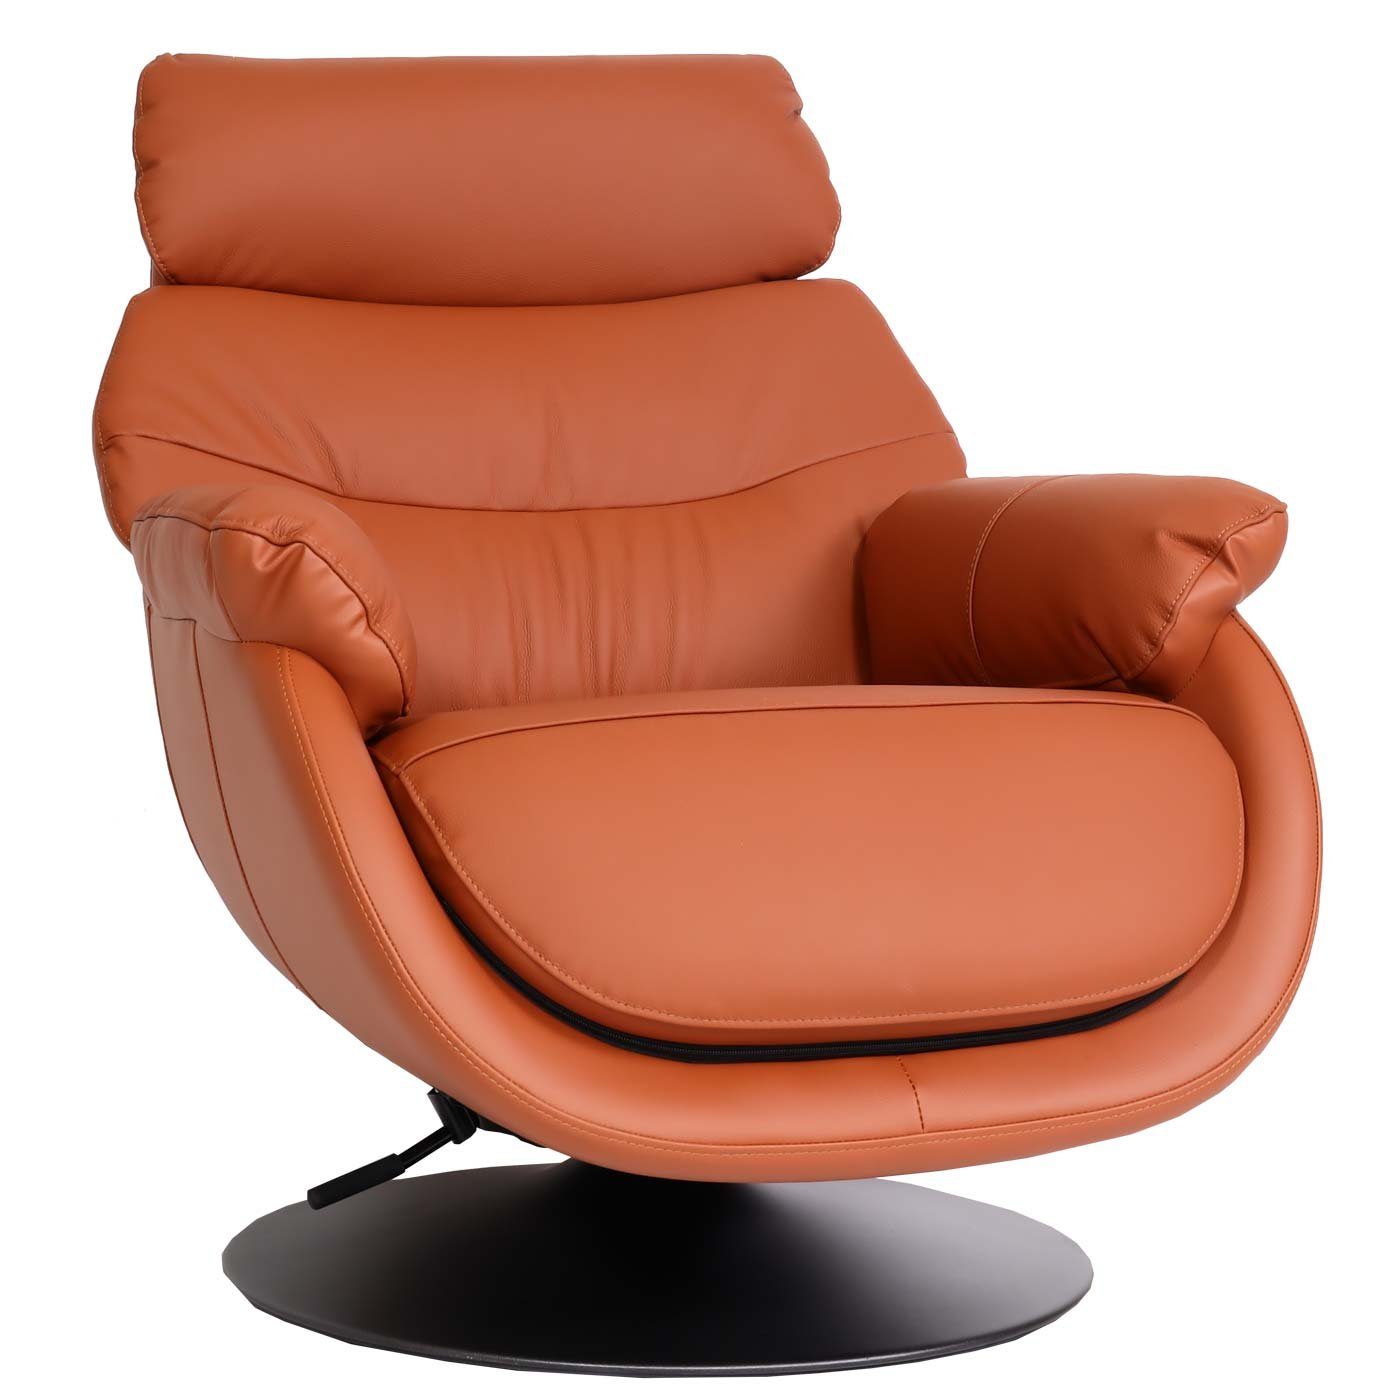 MCW Relaxsessel MCW-K99, Mit Sitzfläche, Breite Mit Feststellhebel, | braun braun Armlehnen